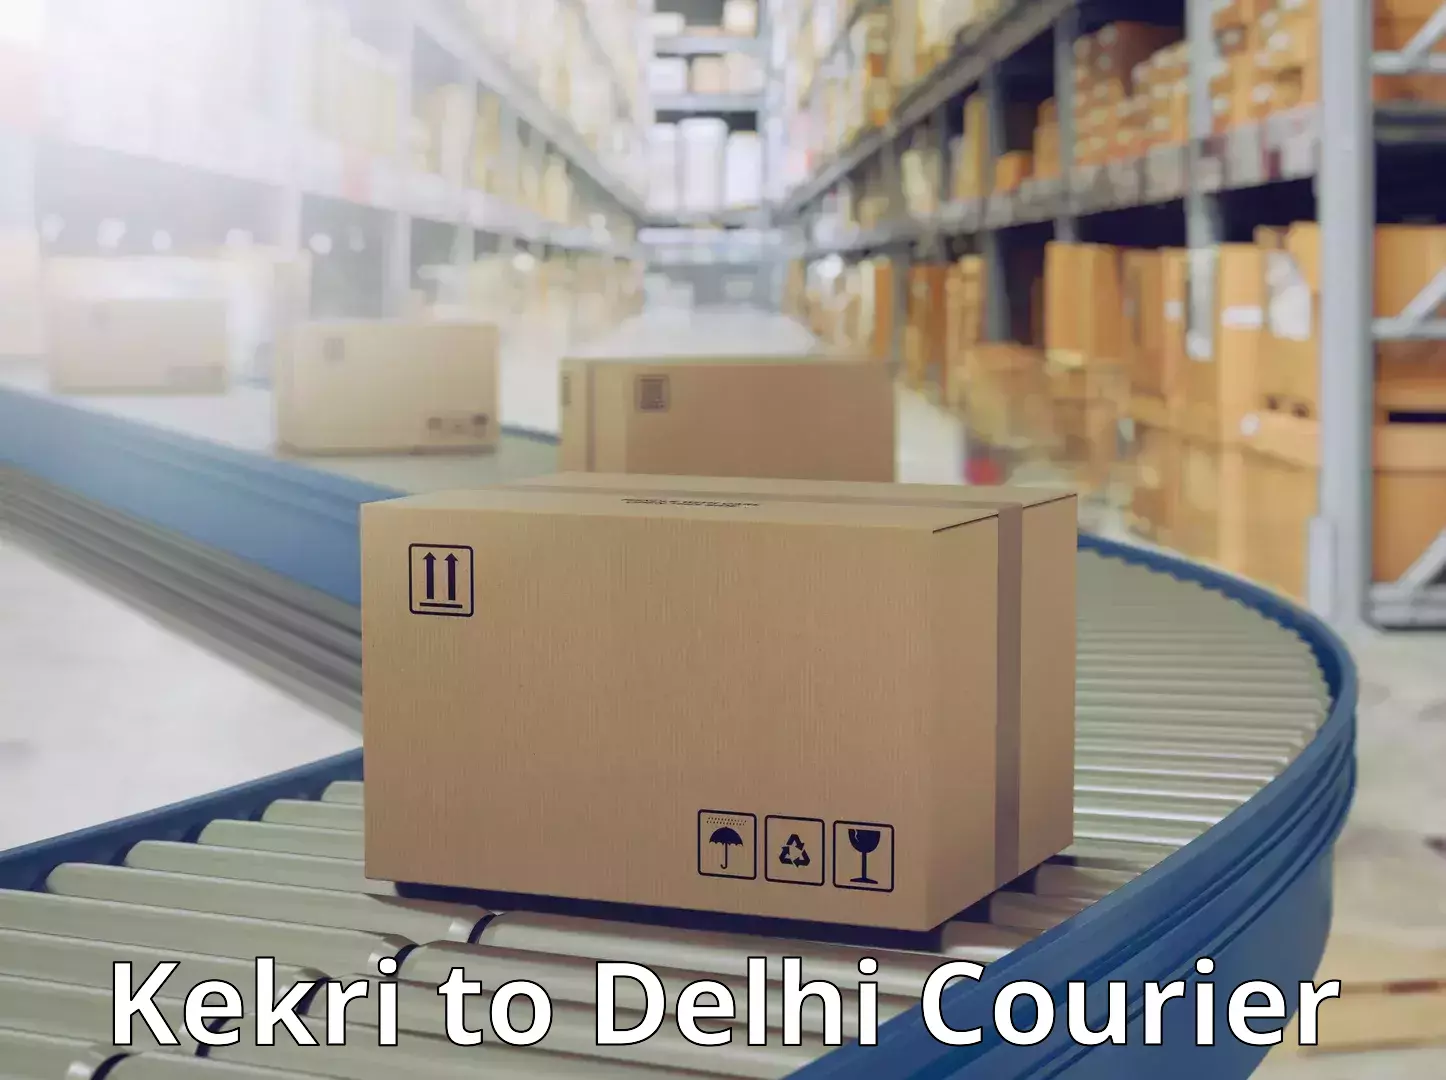 Local delivery service Kekri to Delhi